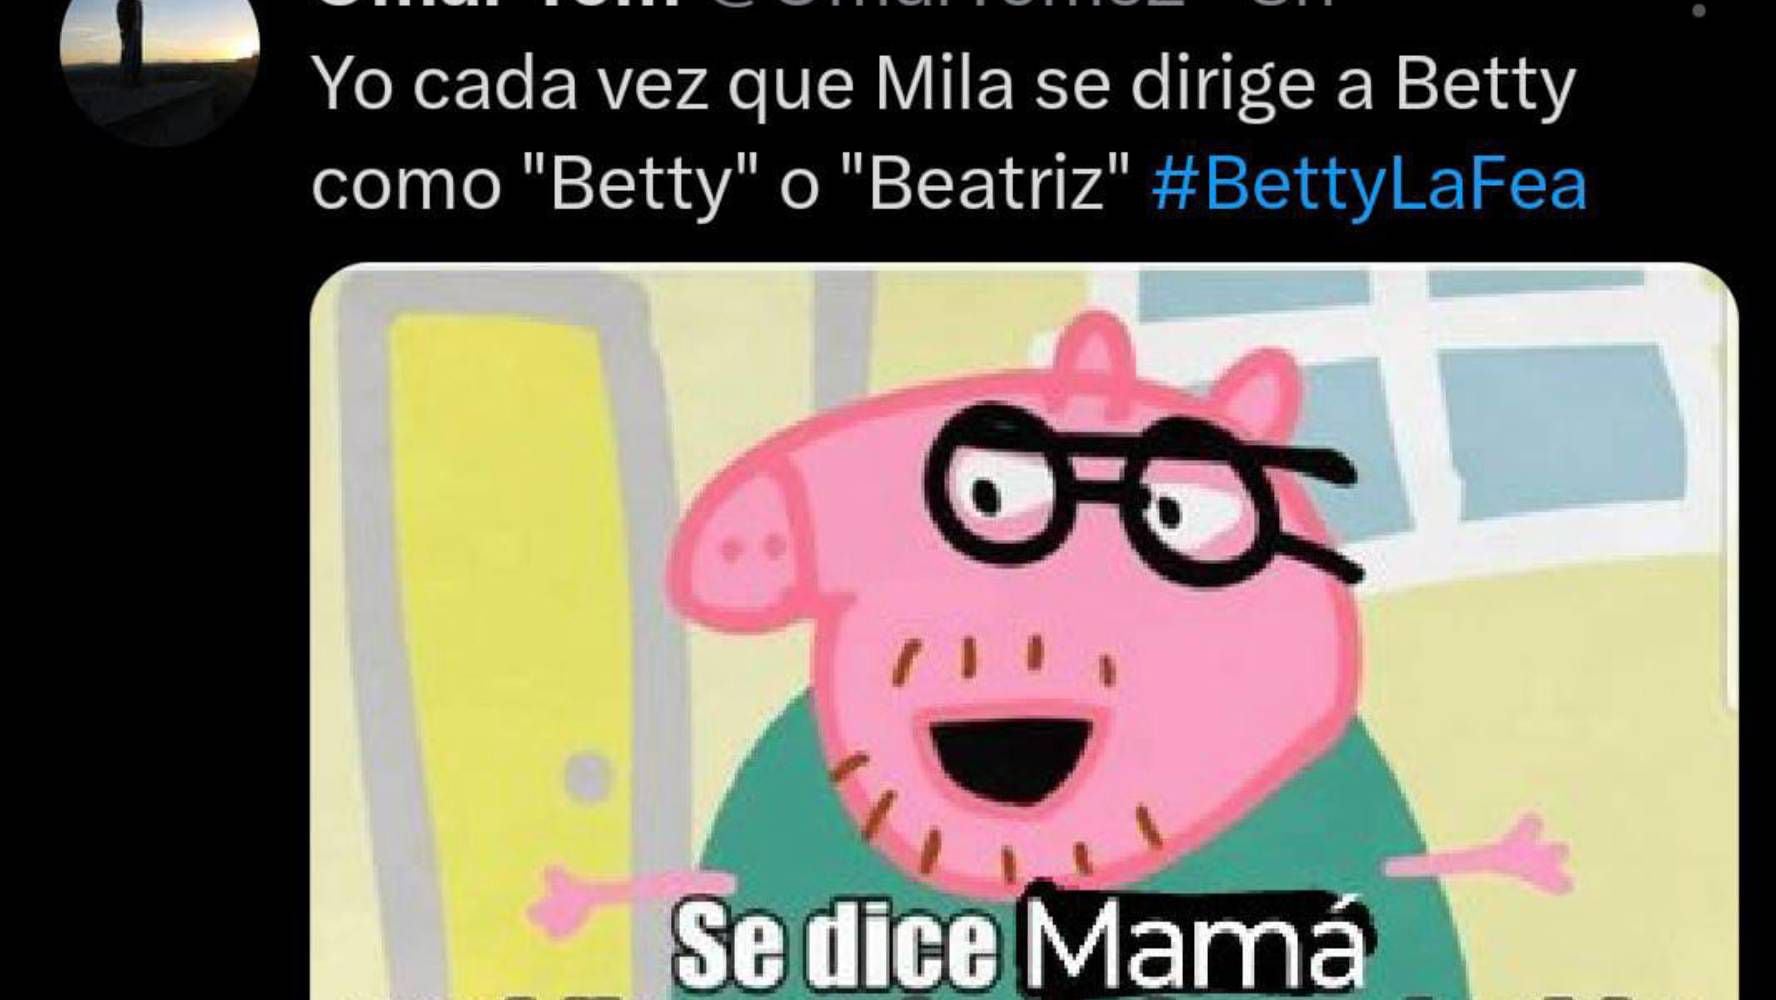 Los memes criticaron al personaje de Juanita Molina. (Foto: Redes sociales)